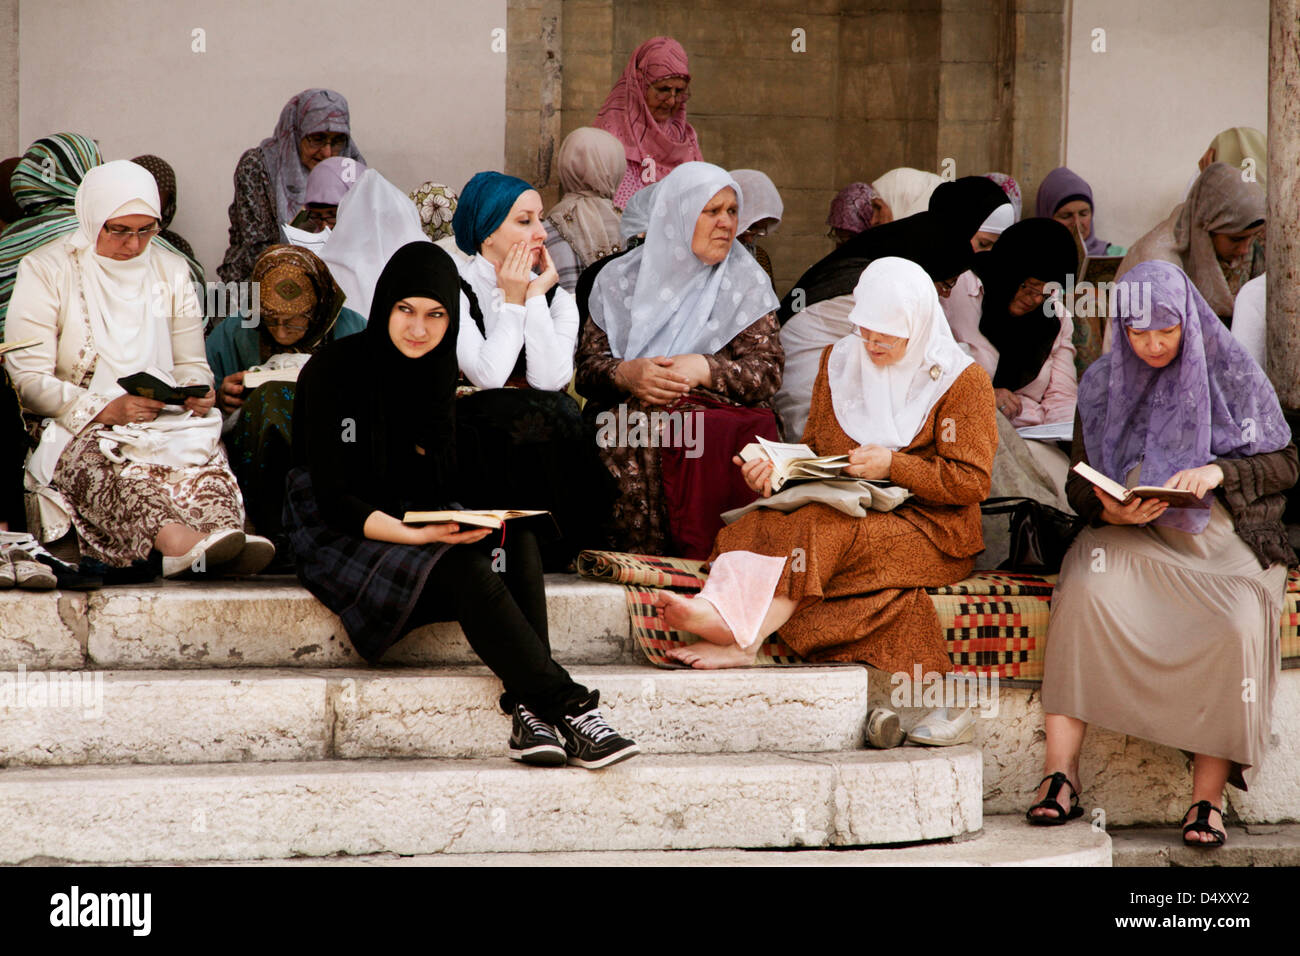 Gruop of women praying at the mosque of Gazi Husrev-beg Stock Photo